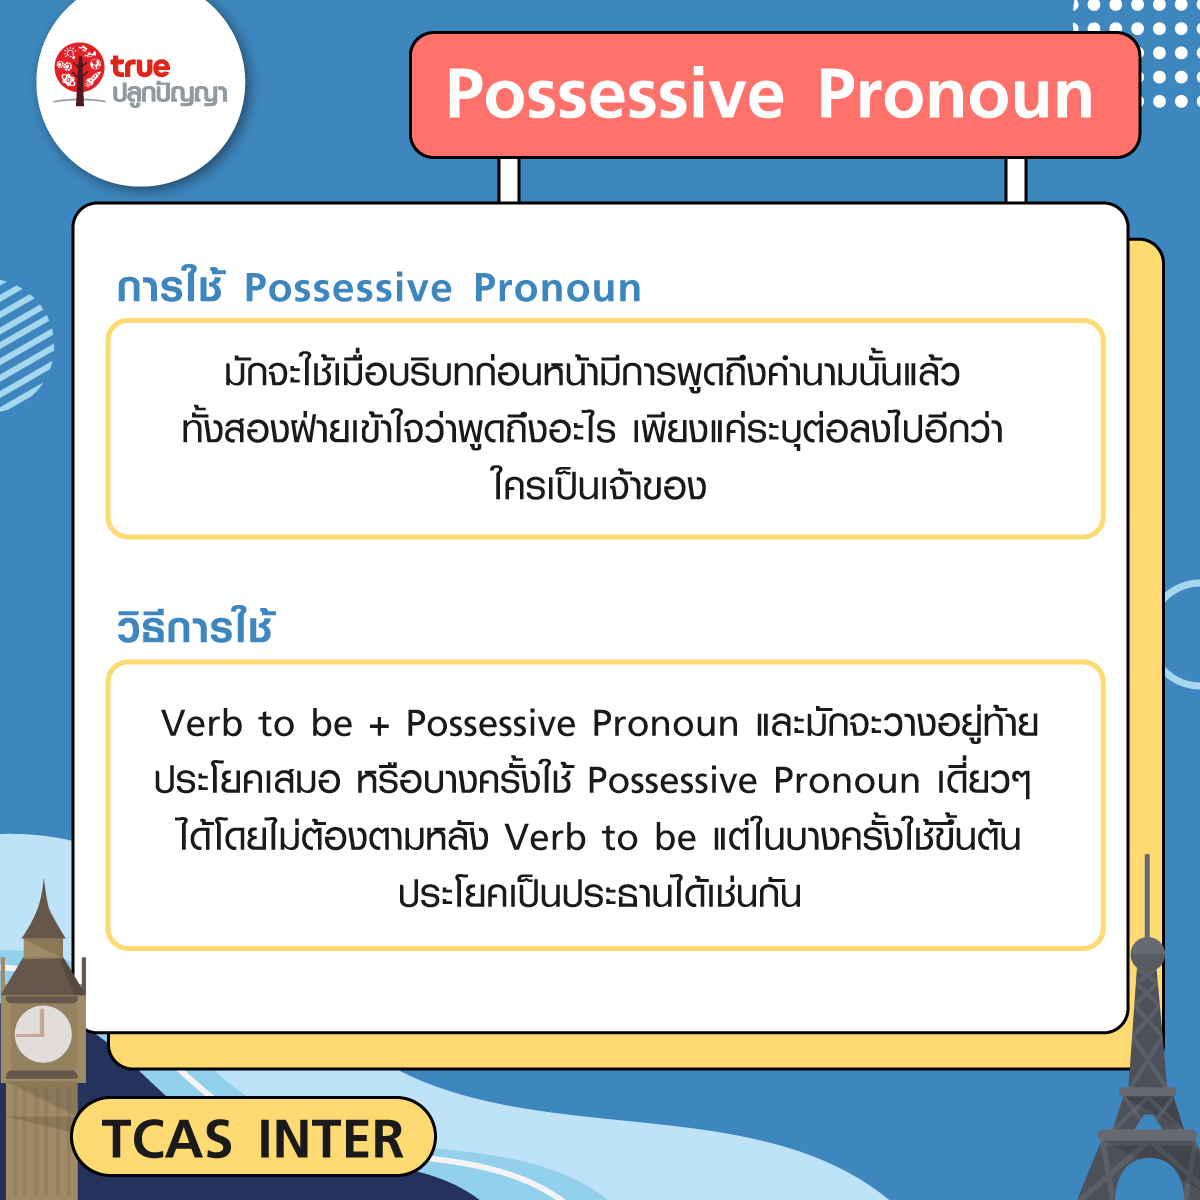 แกรมม่า TU-GET การใช้ Possessive Pronoun